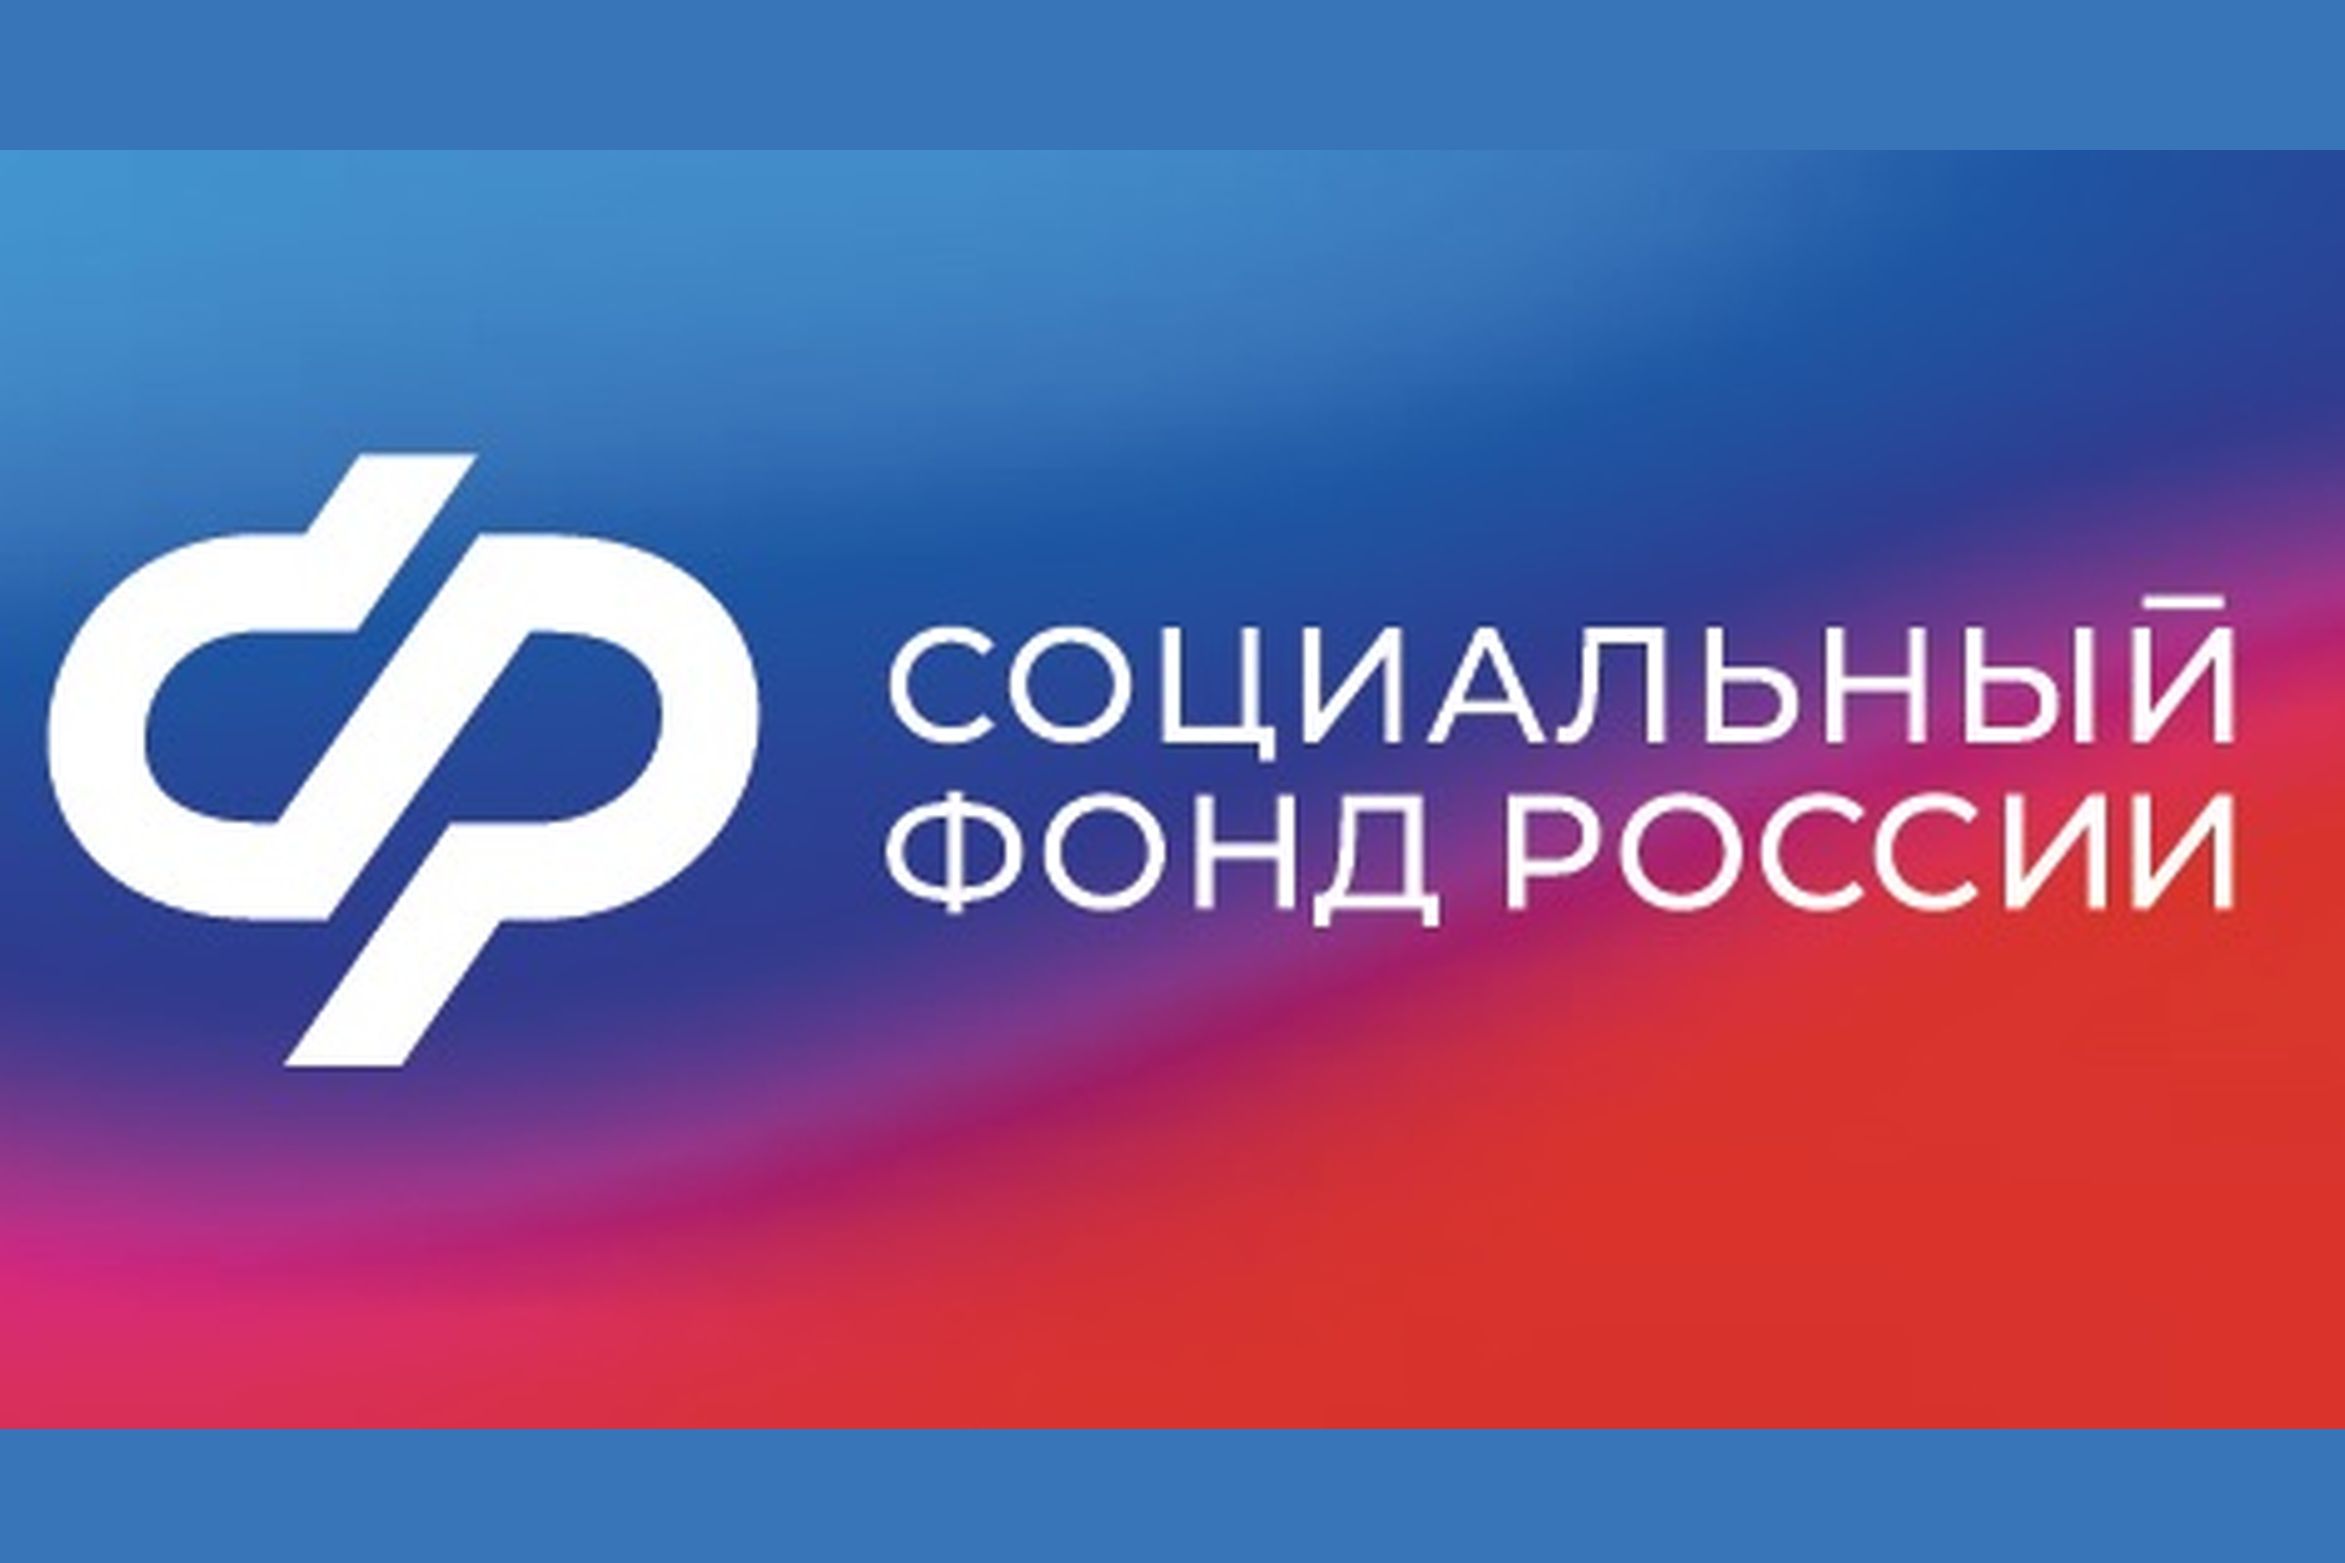 Жители ДНР могут направить обращение в Соцфонд через социальные сети